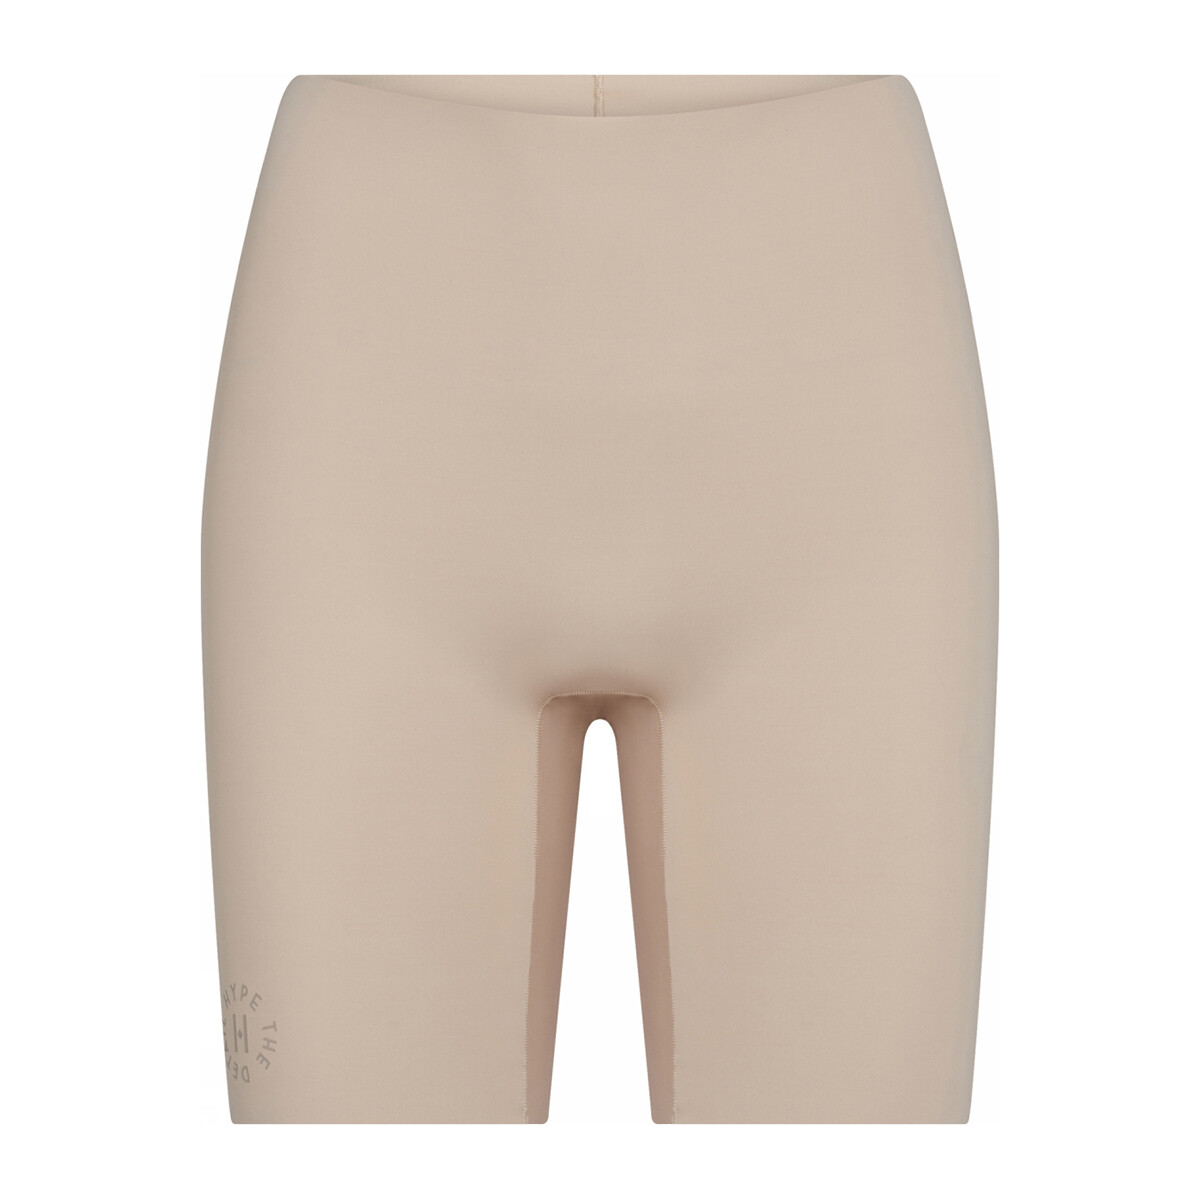 7: Hype The Detail Essentials Shorts, Farve: Beige, Størrelse: M, Dame